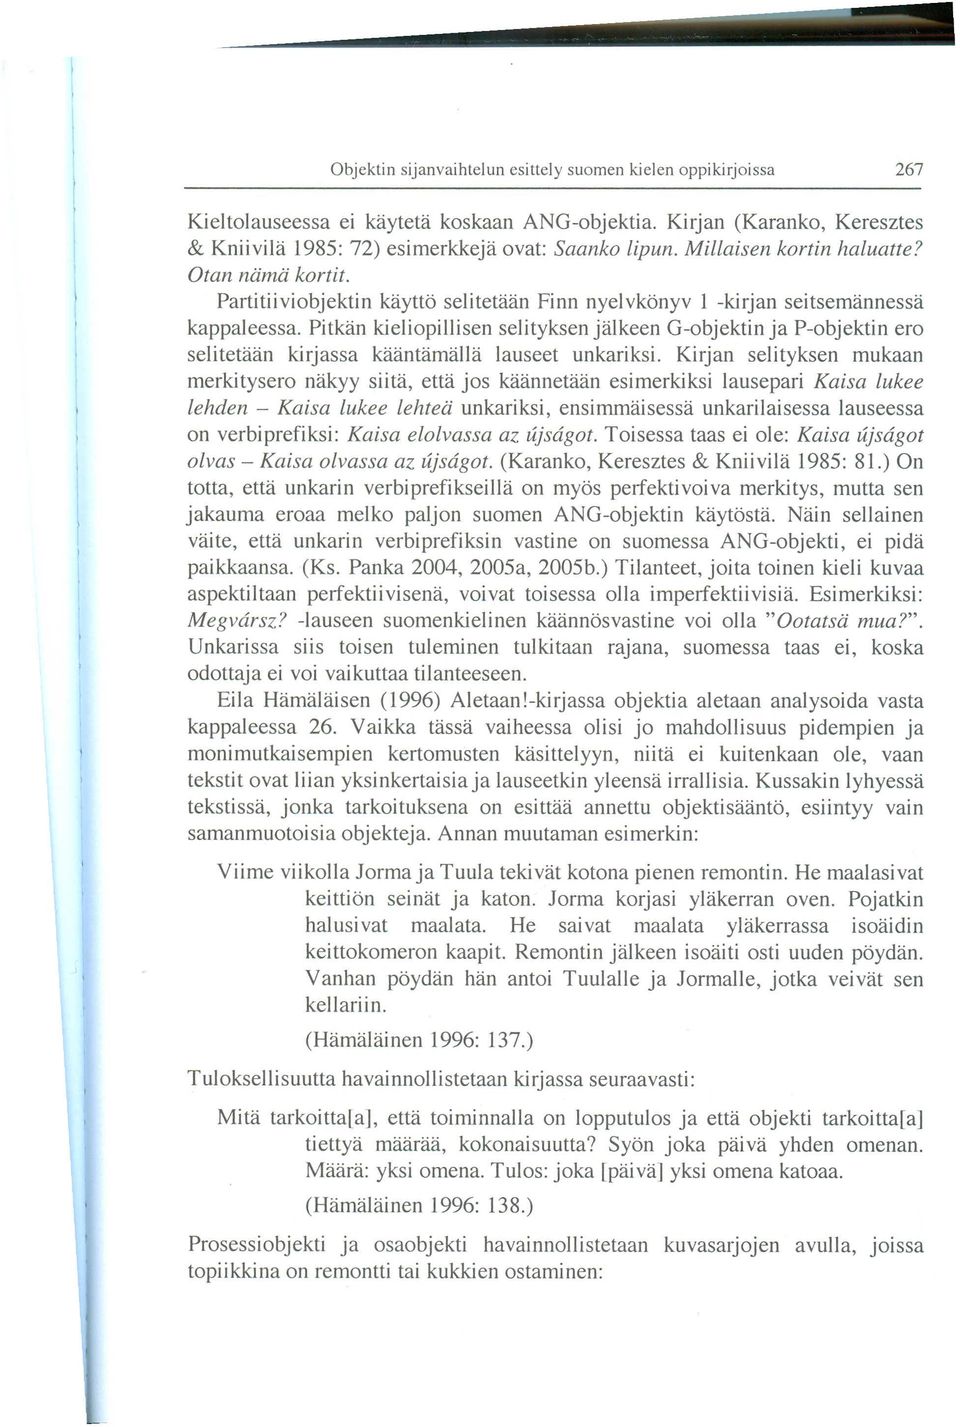 Pitkan kieliopillisen selityksen jalkeen G-objektin ja P-objektin era selitetaan kirjassa kaantamalla lauseet unkariksi.